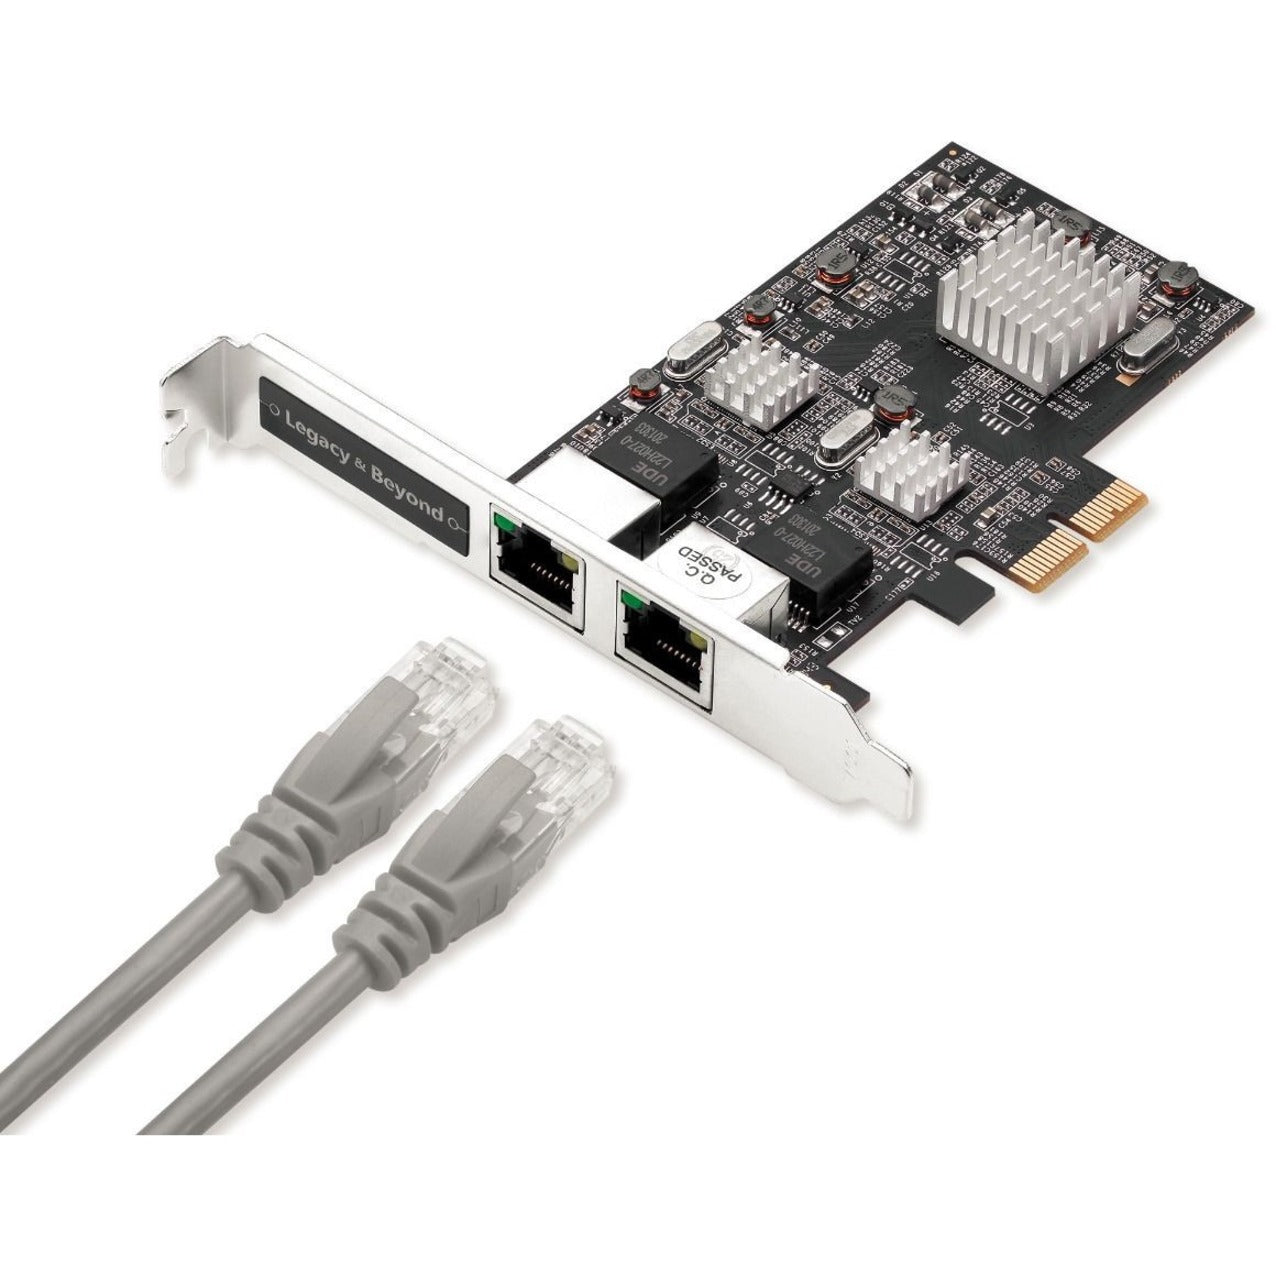 Marca: SIIG Nombre de la marca: SIIG  Tarjeta PCIe de Ethernet Multi-Gigabit de doble velocidad 2.5G 4 conectividad de red de alta velocidad